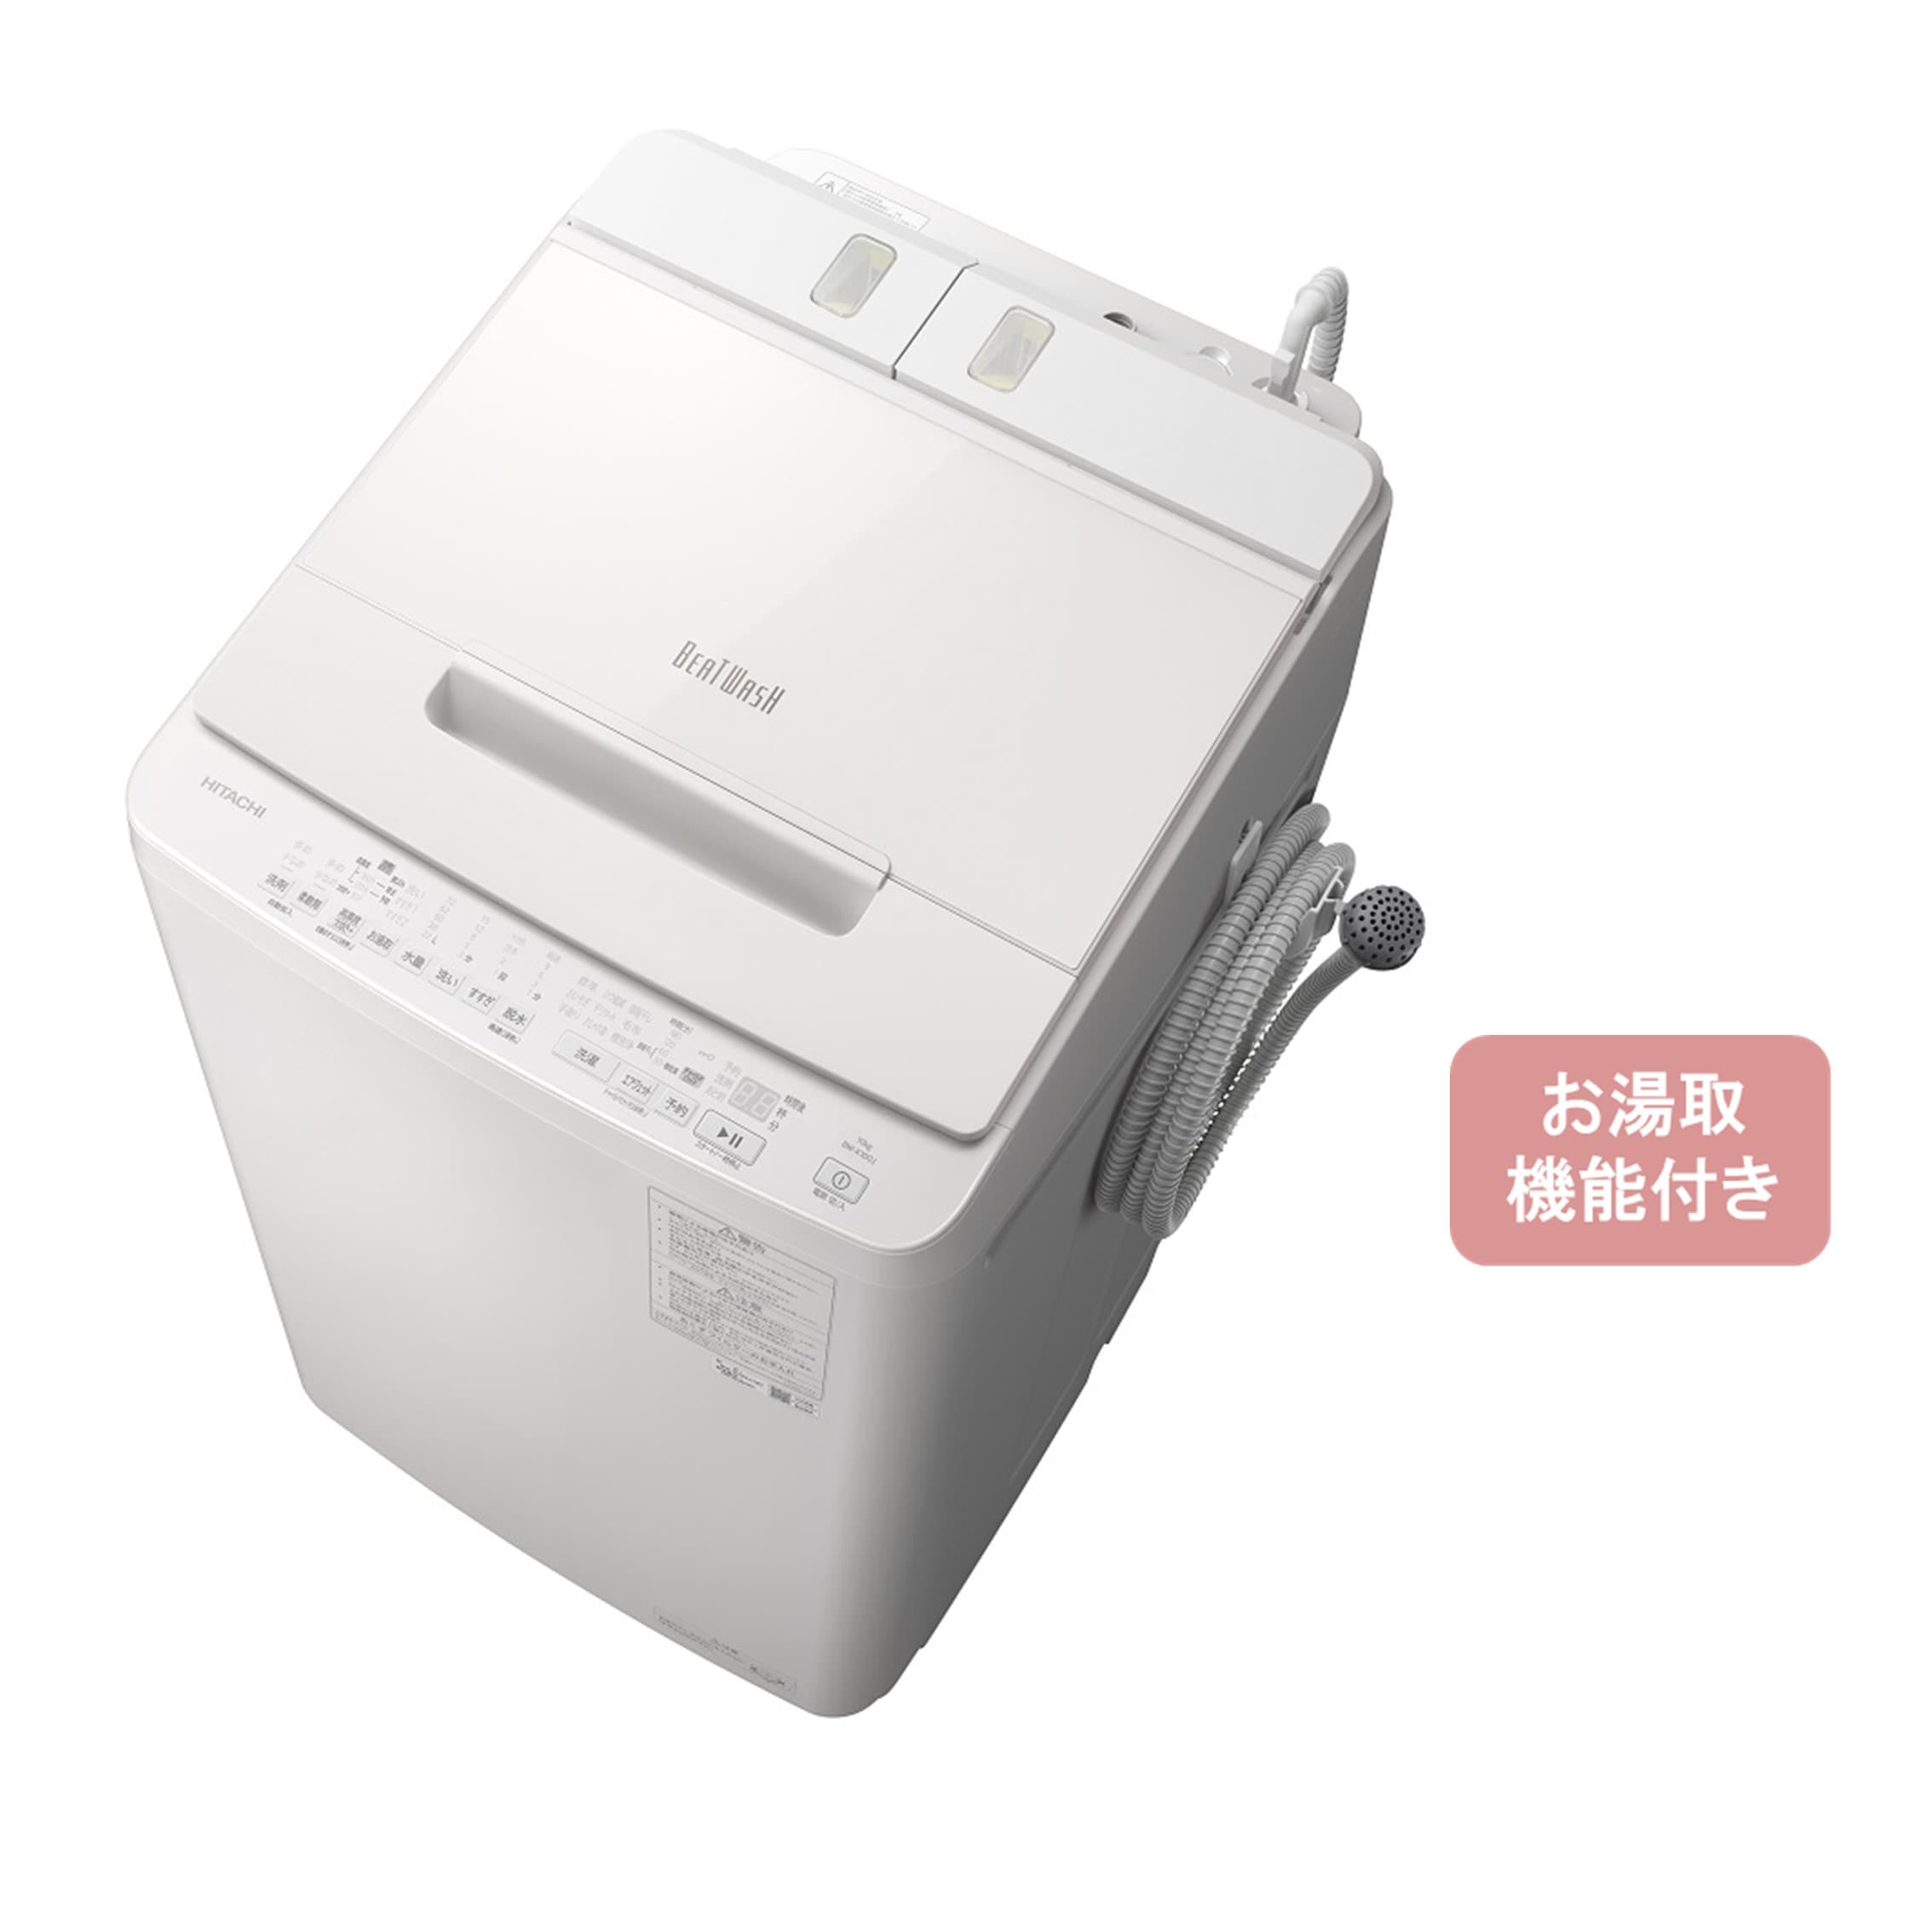 タテ型洗濯機（10kg） BW-X100J W(ホワイト): 生活家電/日立の家電品 